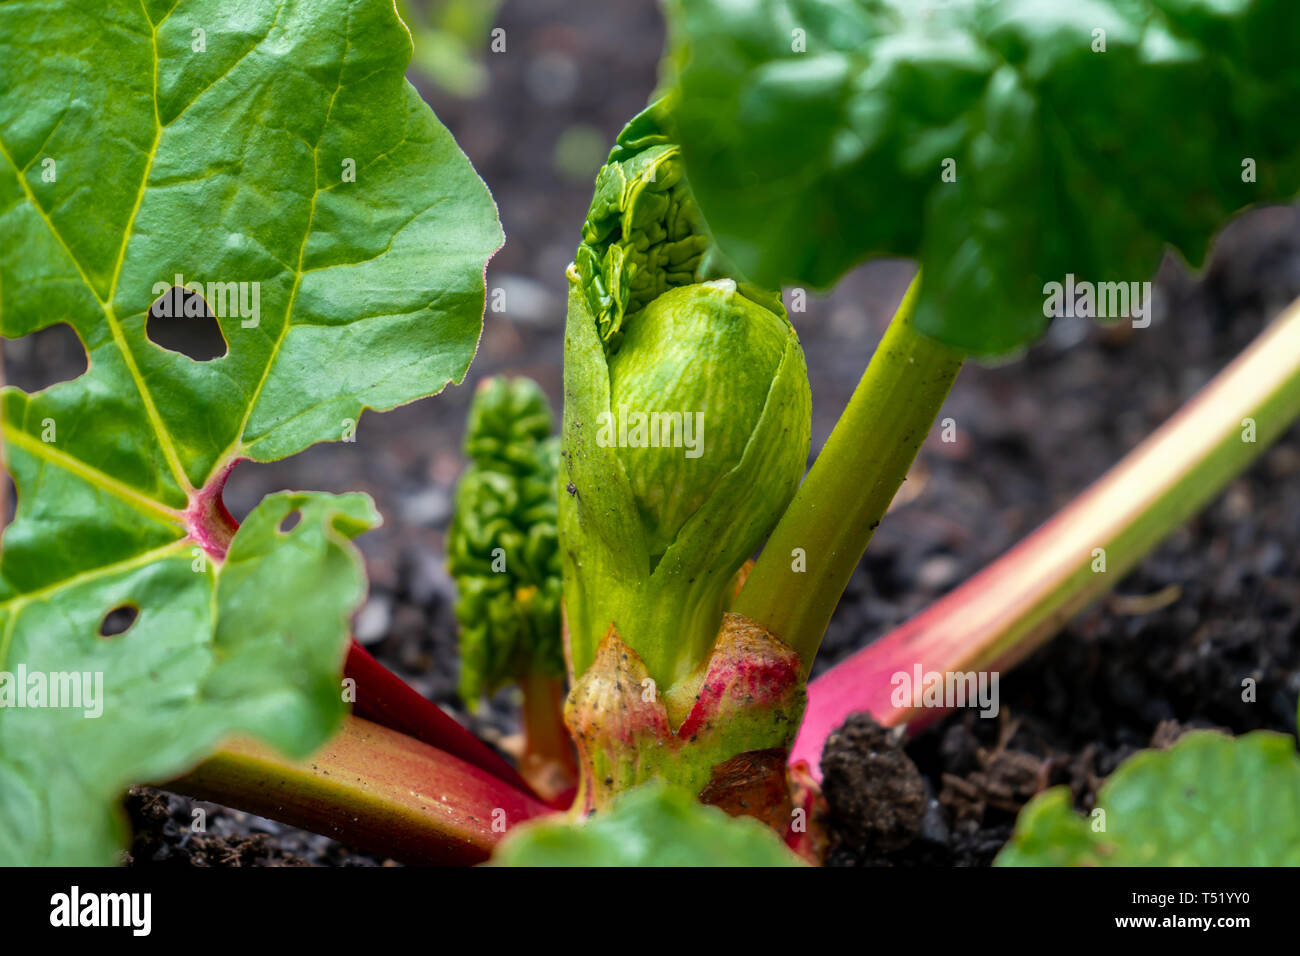 Der frühe Frühling rhubab Krone wachsende rote Rhabarberstengeln. Close Up, Makro Fotografie von Rhabarber. Grüne Blätter und Stiele. Stockfoto